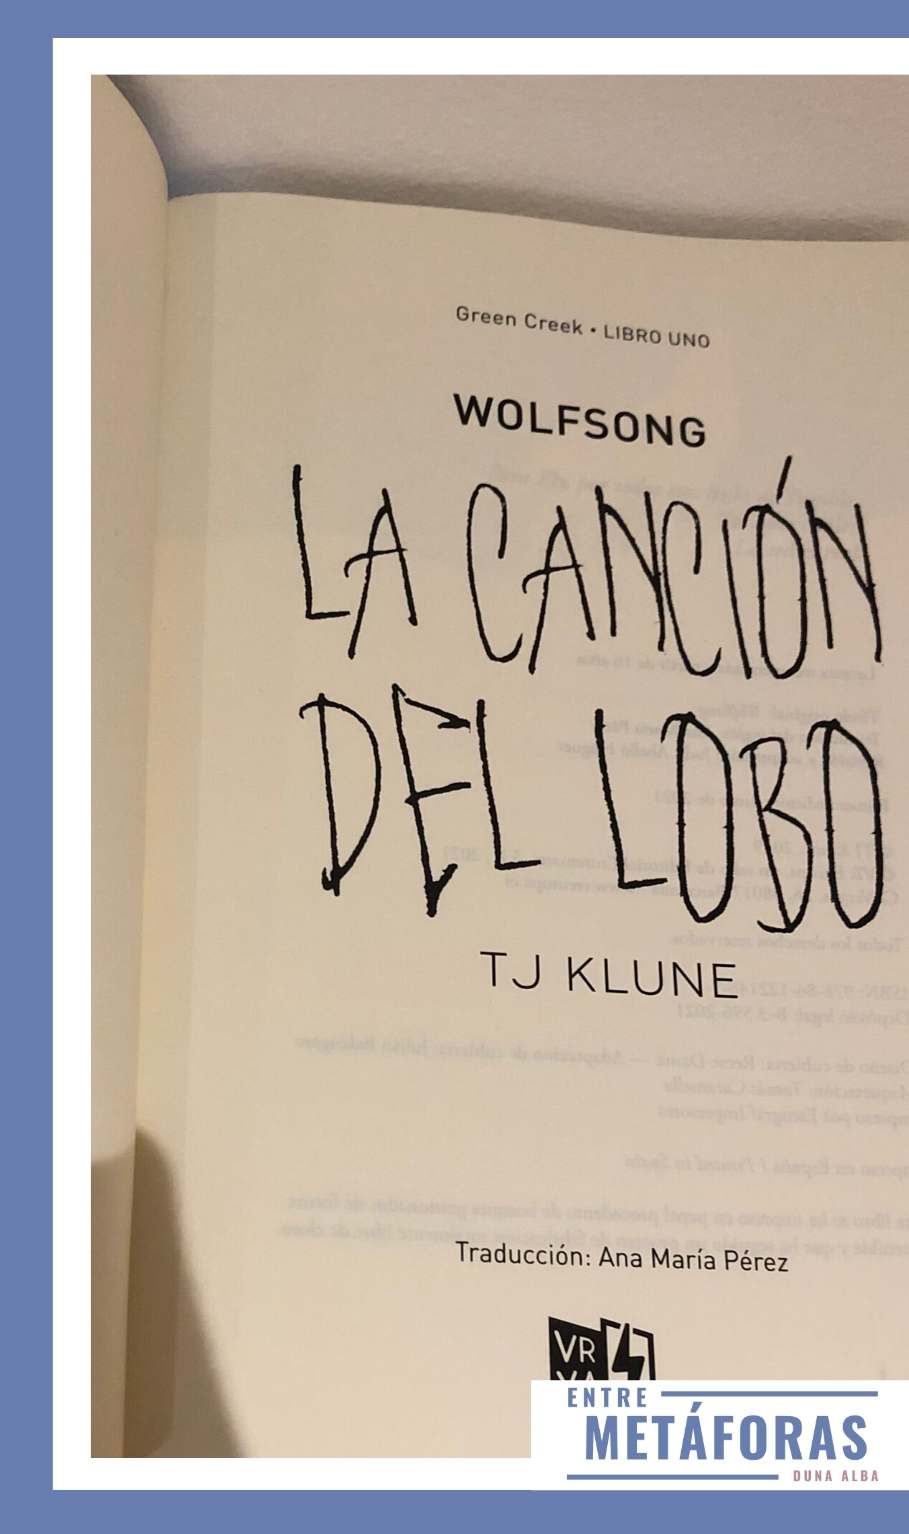 La canción del lobo, de TJ Klune